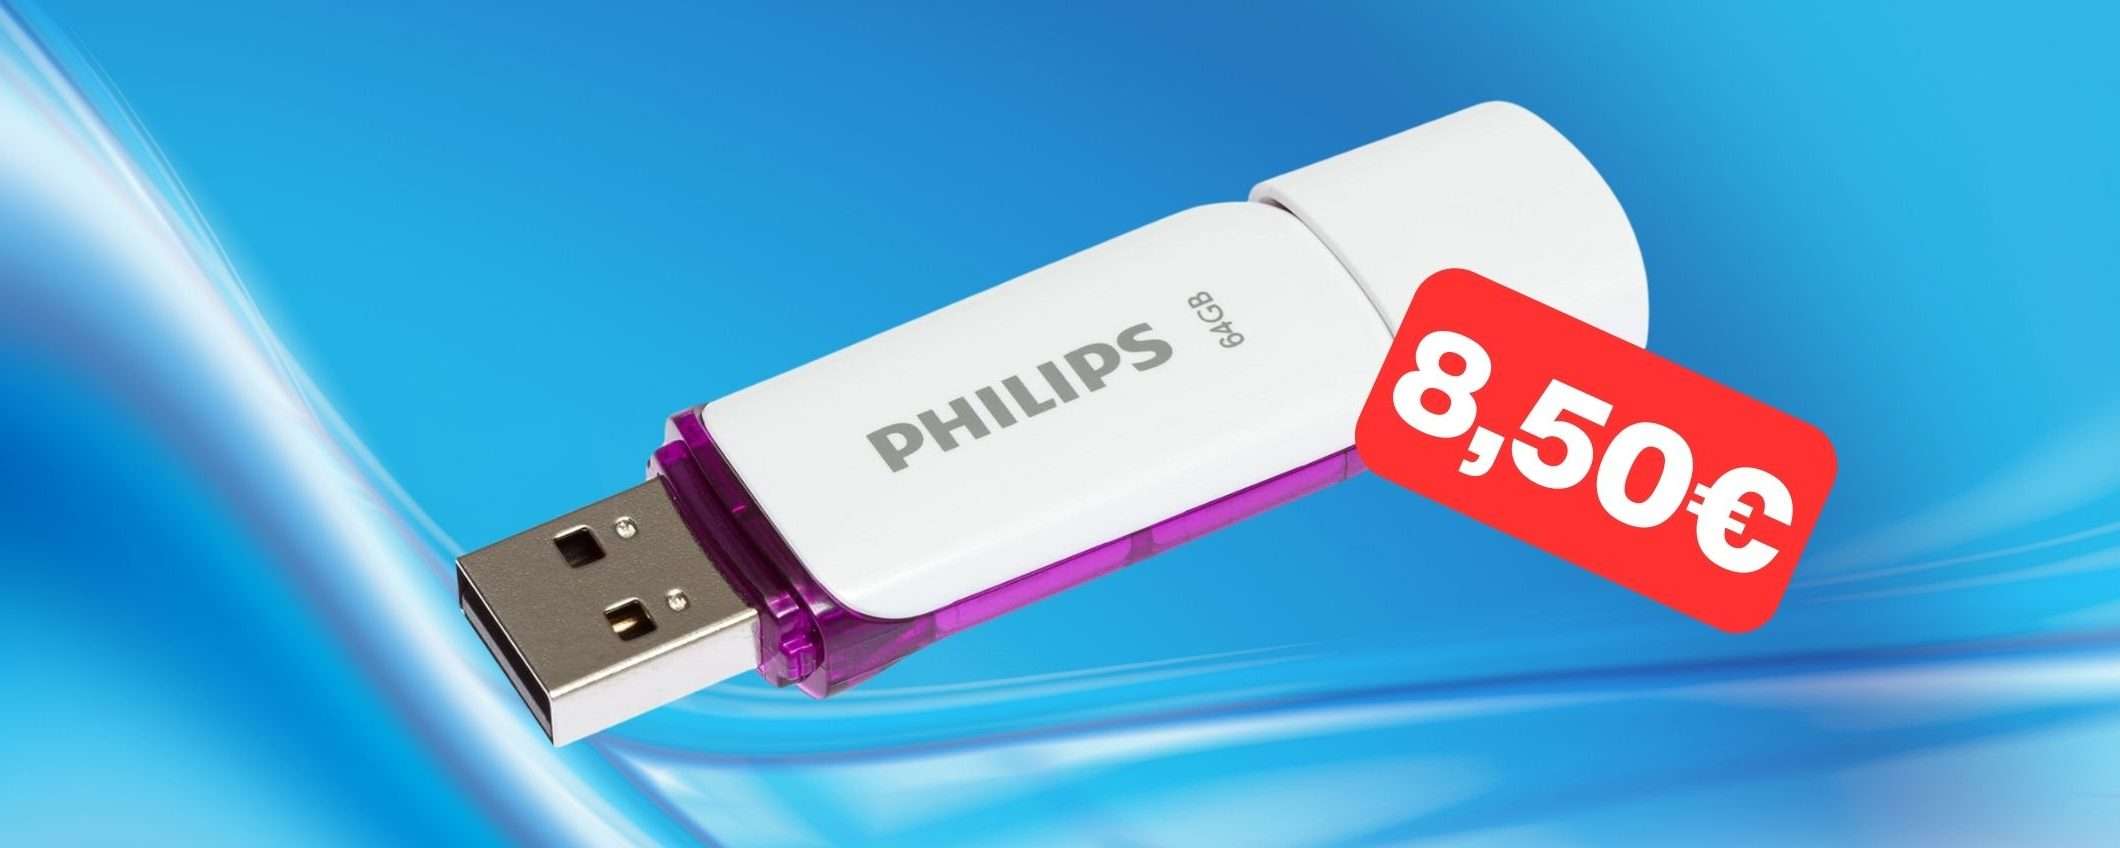 Chiavetta USB Philips 64GB a prezzo stracciato: solo 8,50€ (-63%)